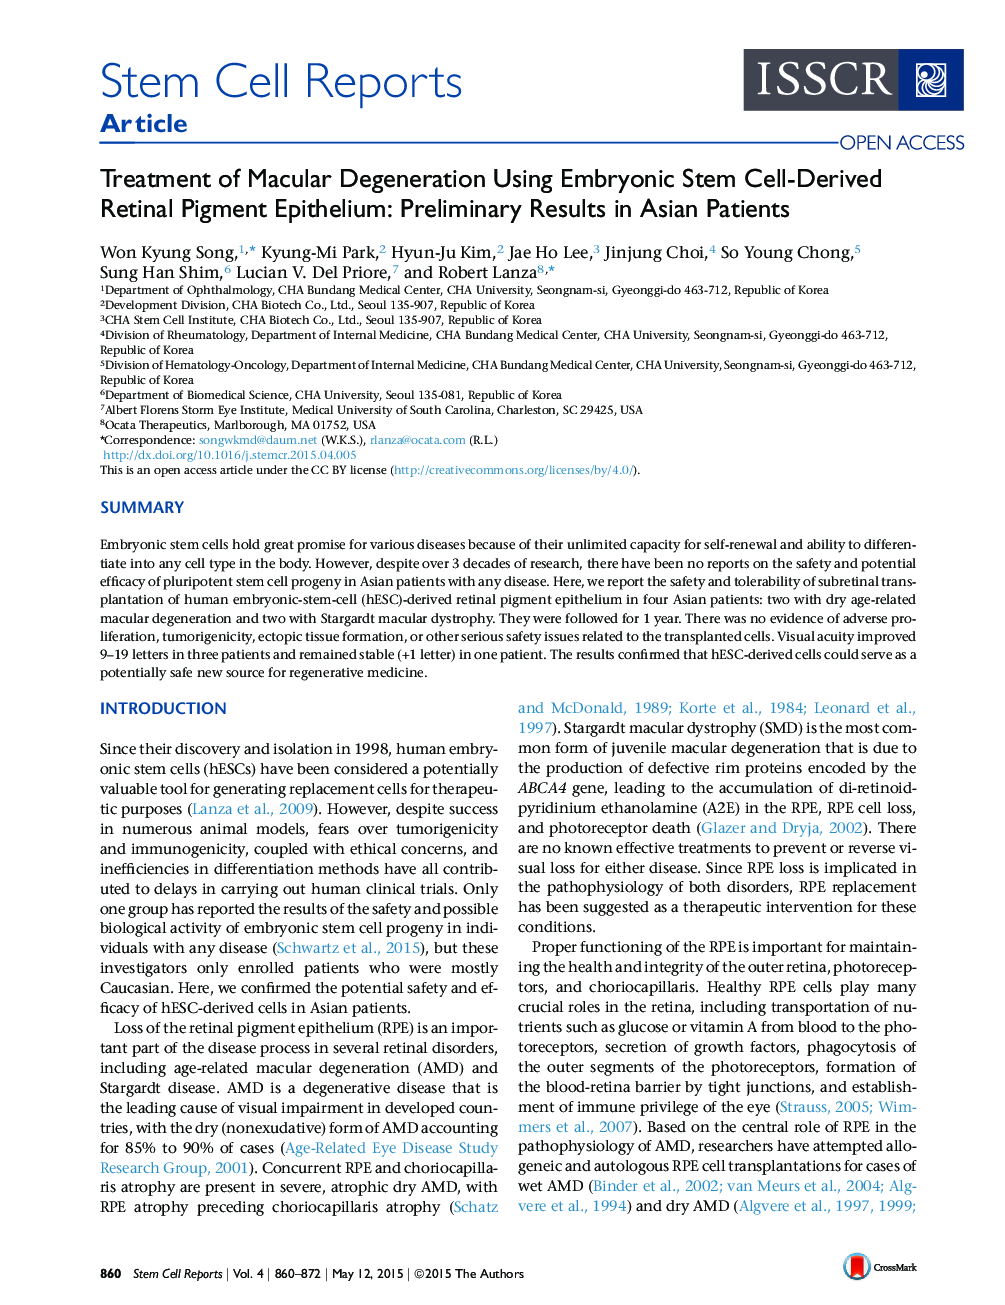 درمان دژنراتیو ماکارونی با استفاده از اپیتلیوم رنگدانه سلول های بنیادی جنینی: نتایج اولیه در بیماران آسیایی 